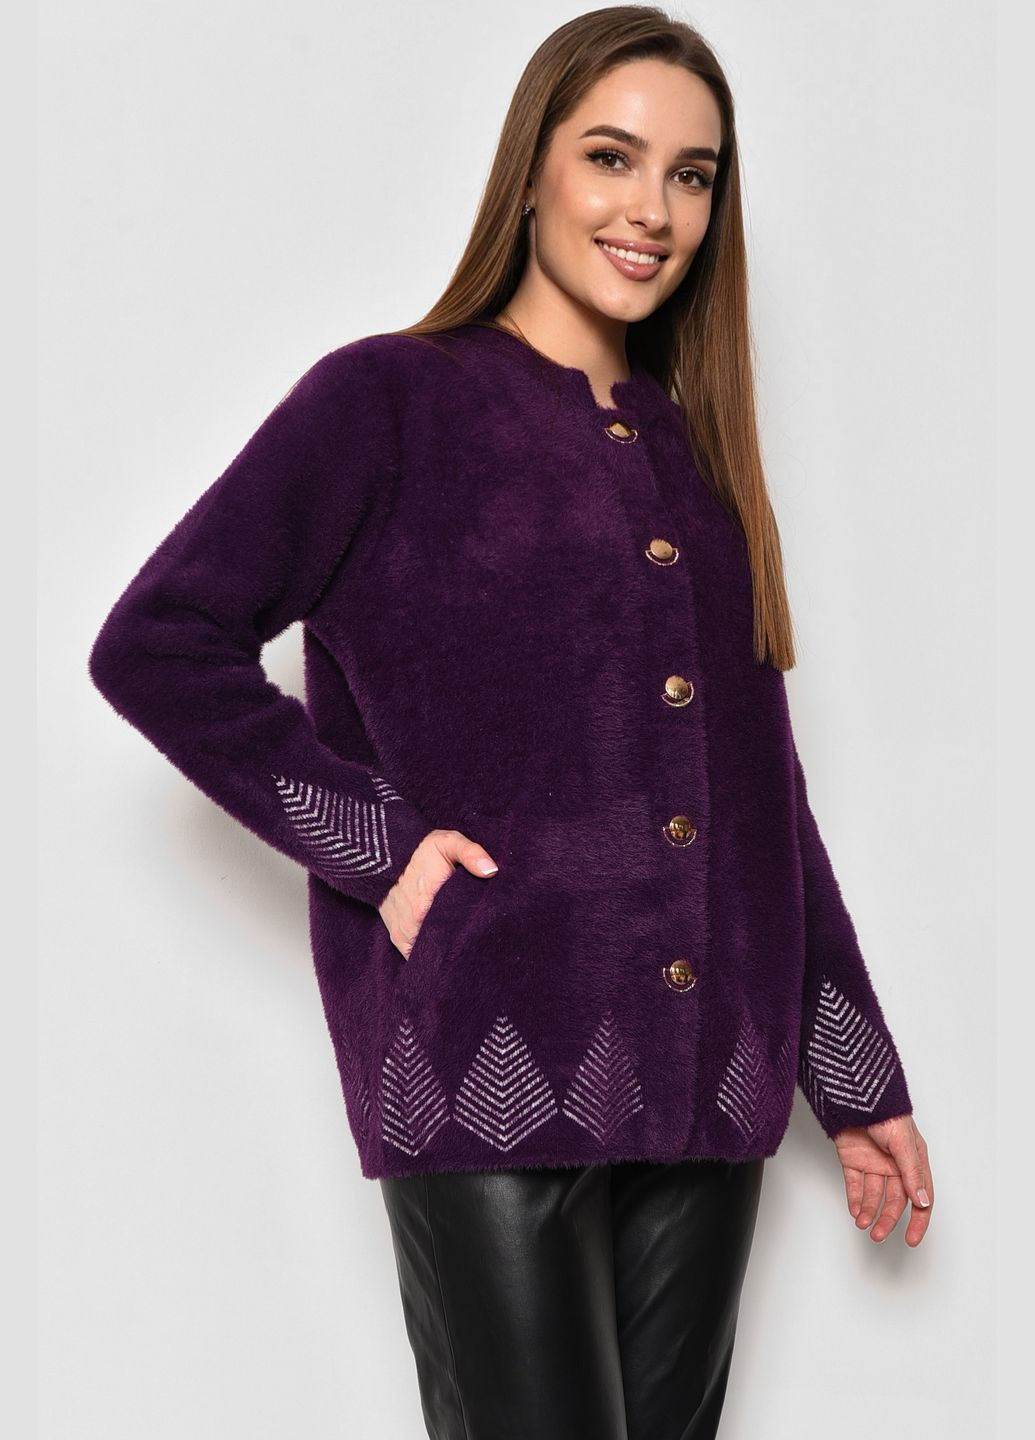 Темно-фиолетовый демисезонный кардиган женский альпака темно-фиолетового цвета пуловер Let's Shop